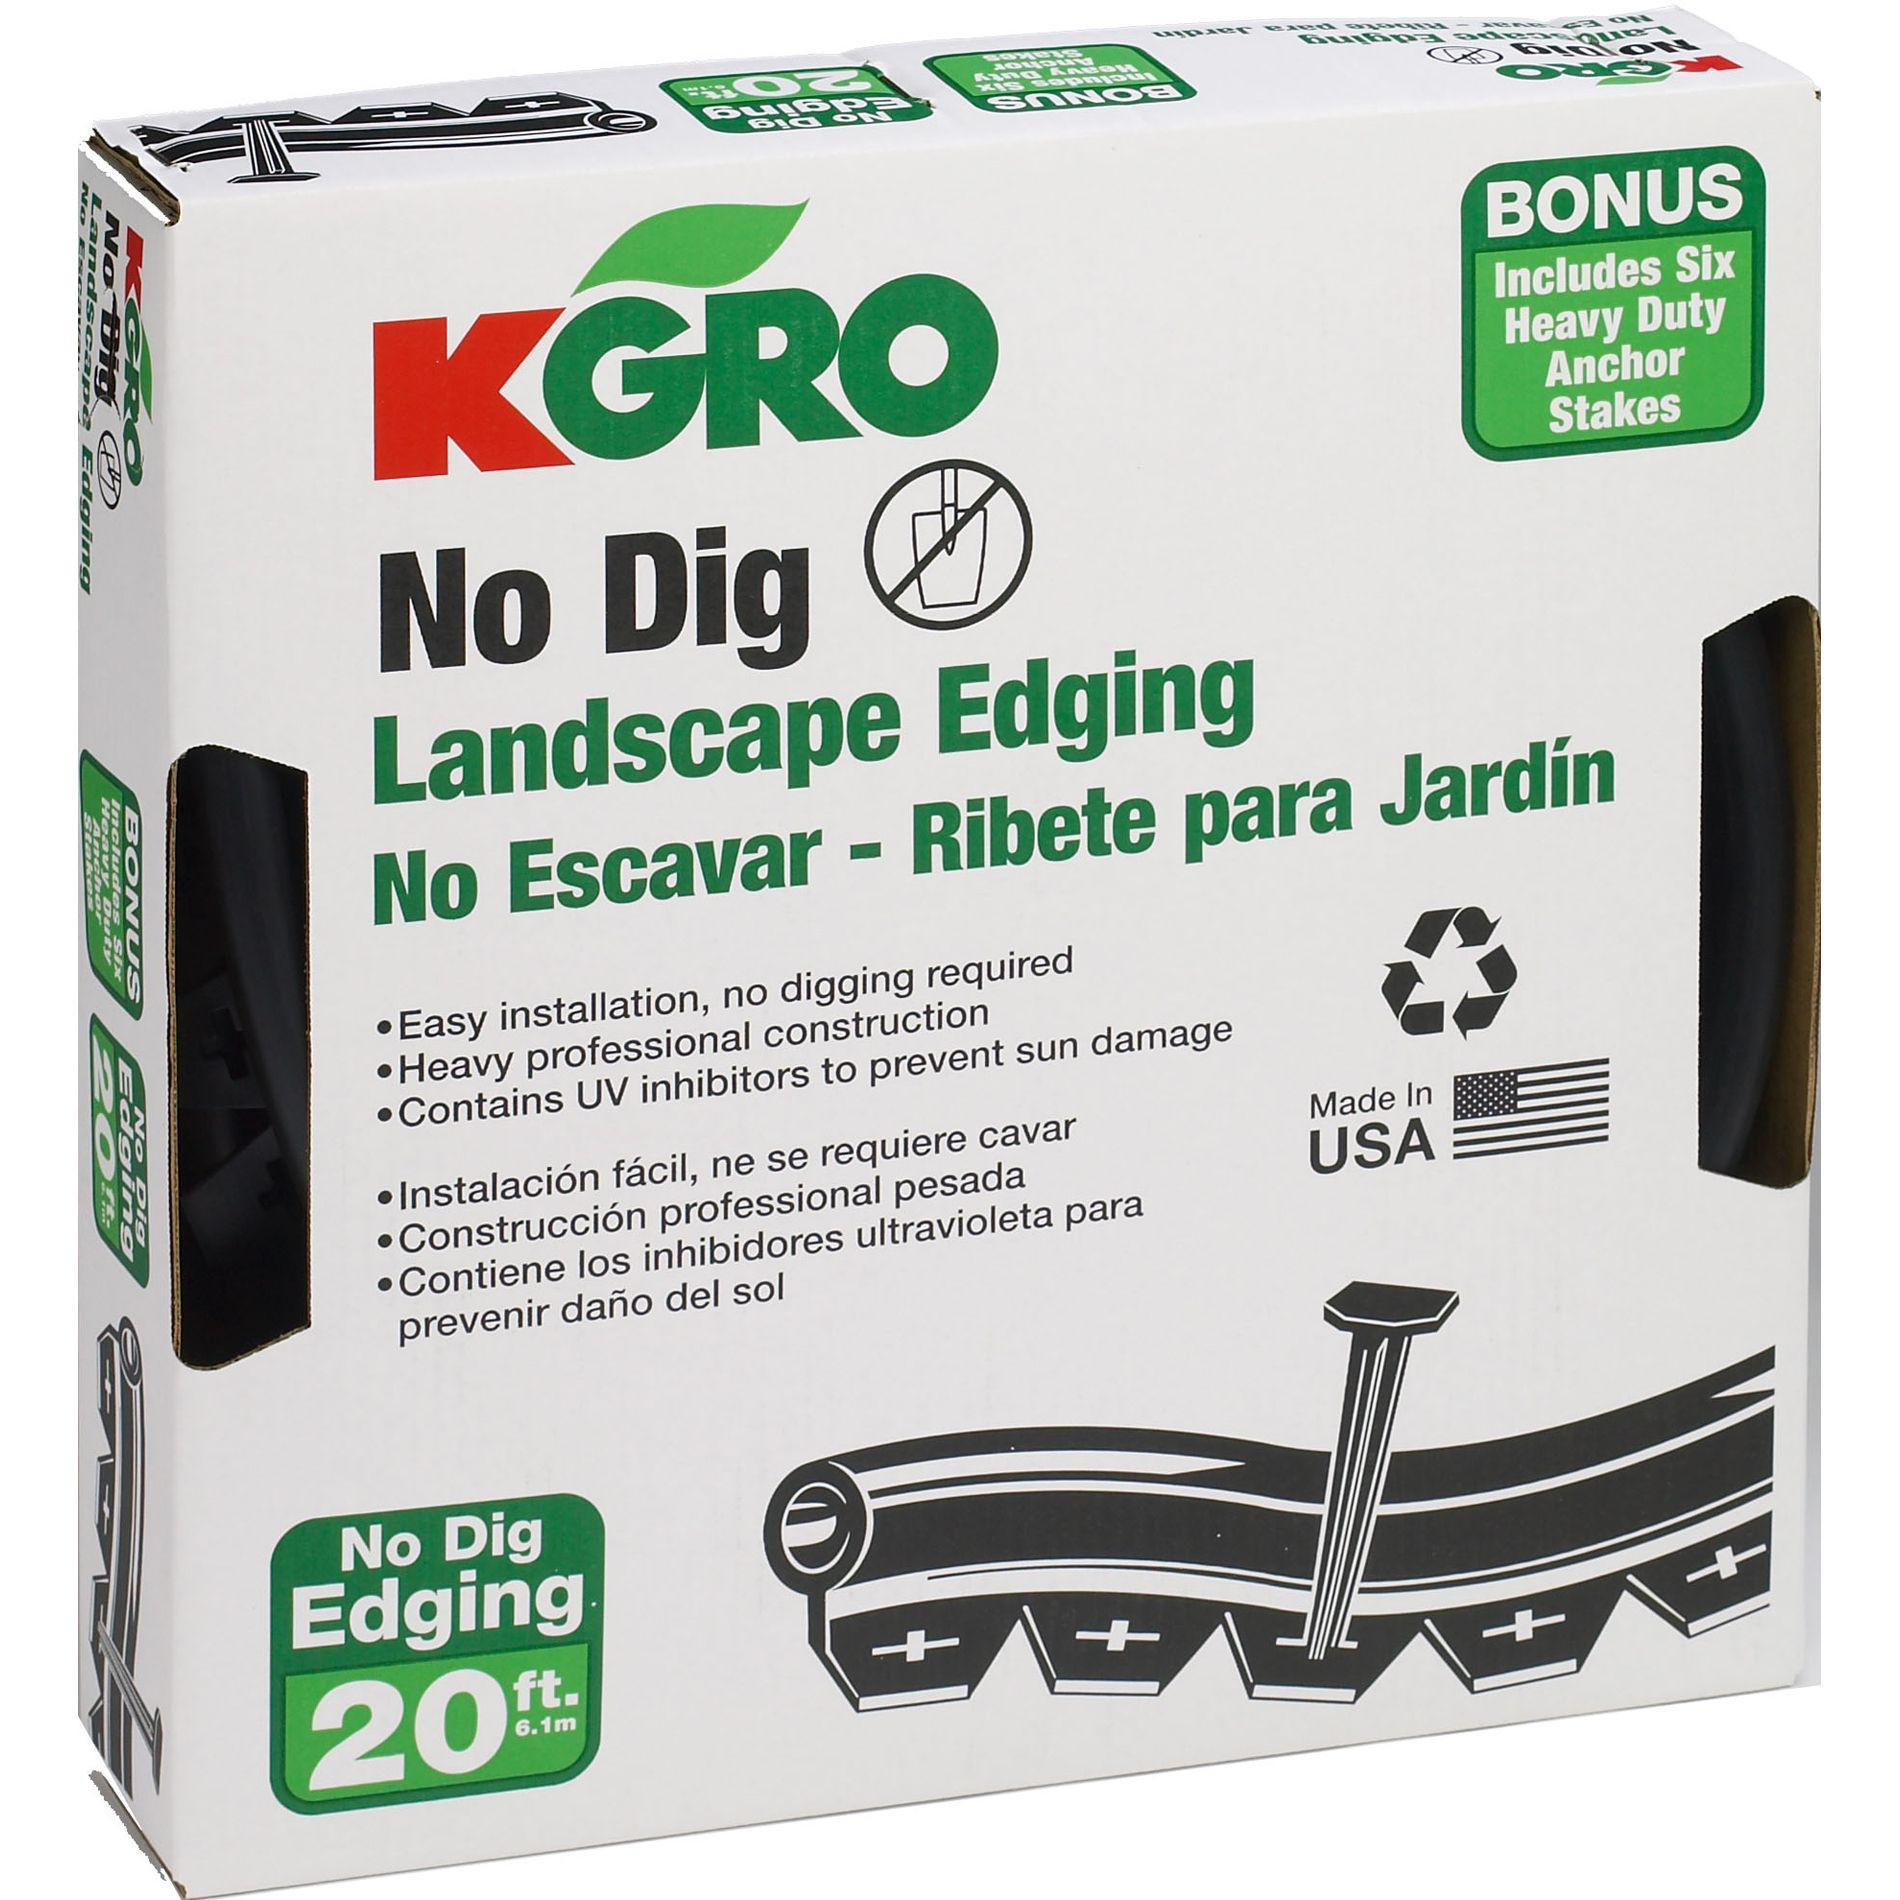 No Digging Landscape Edging
 Kgro No Dig 20 Landscape Edging Includes 6 Anchor